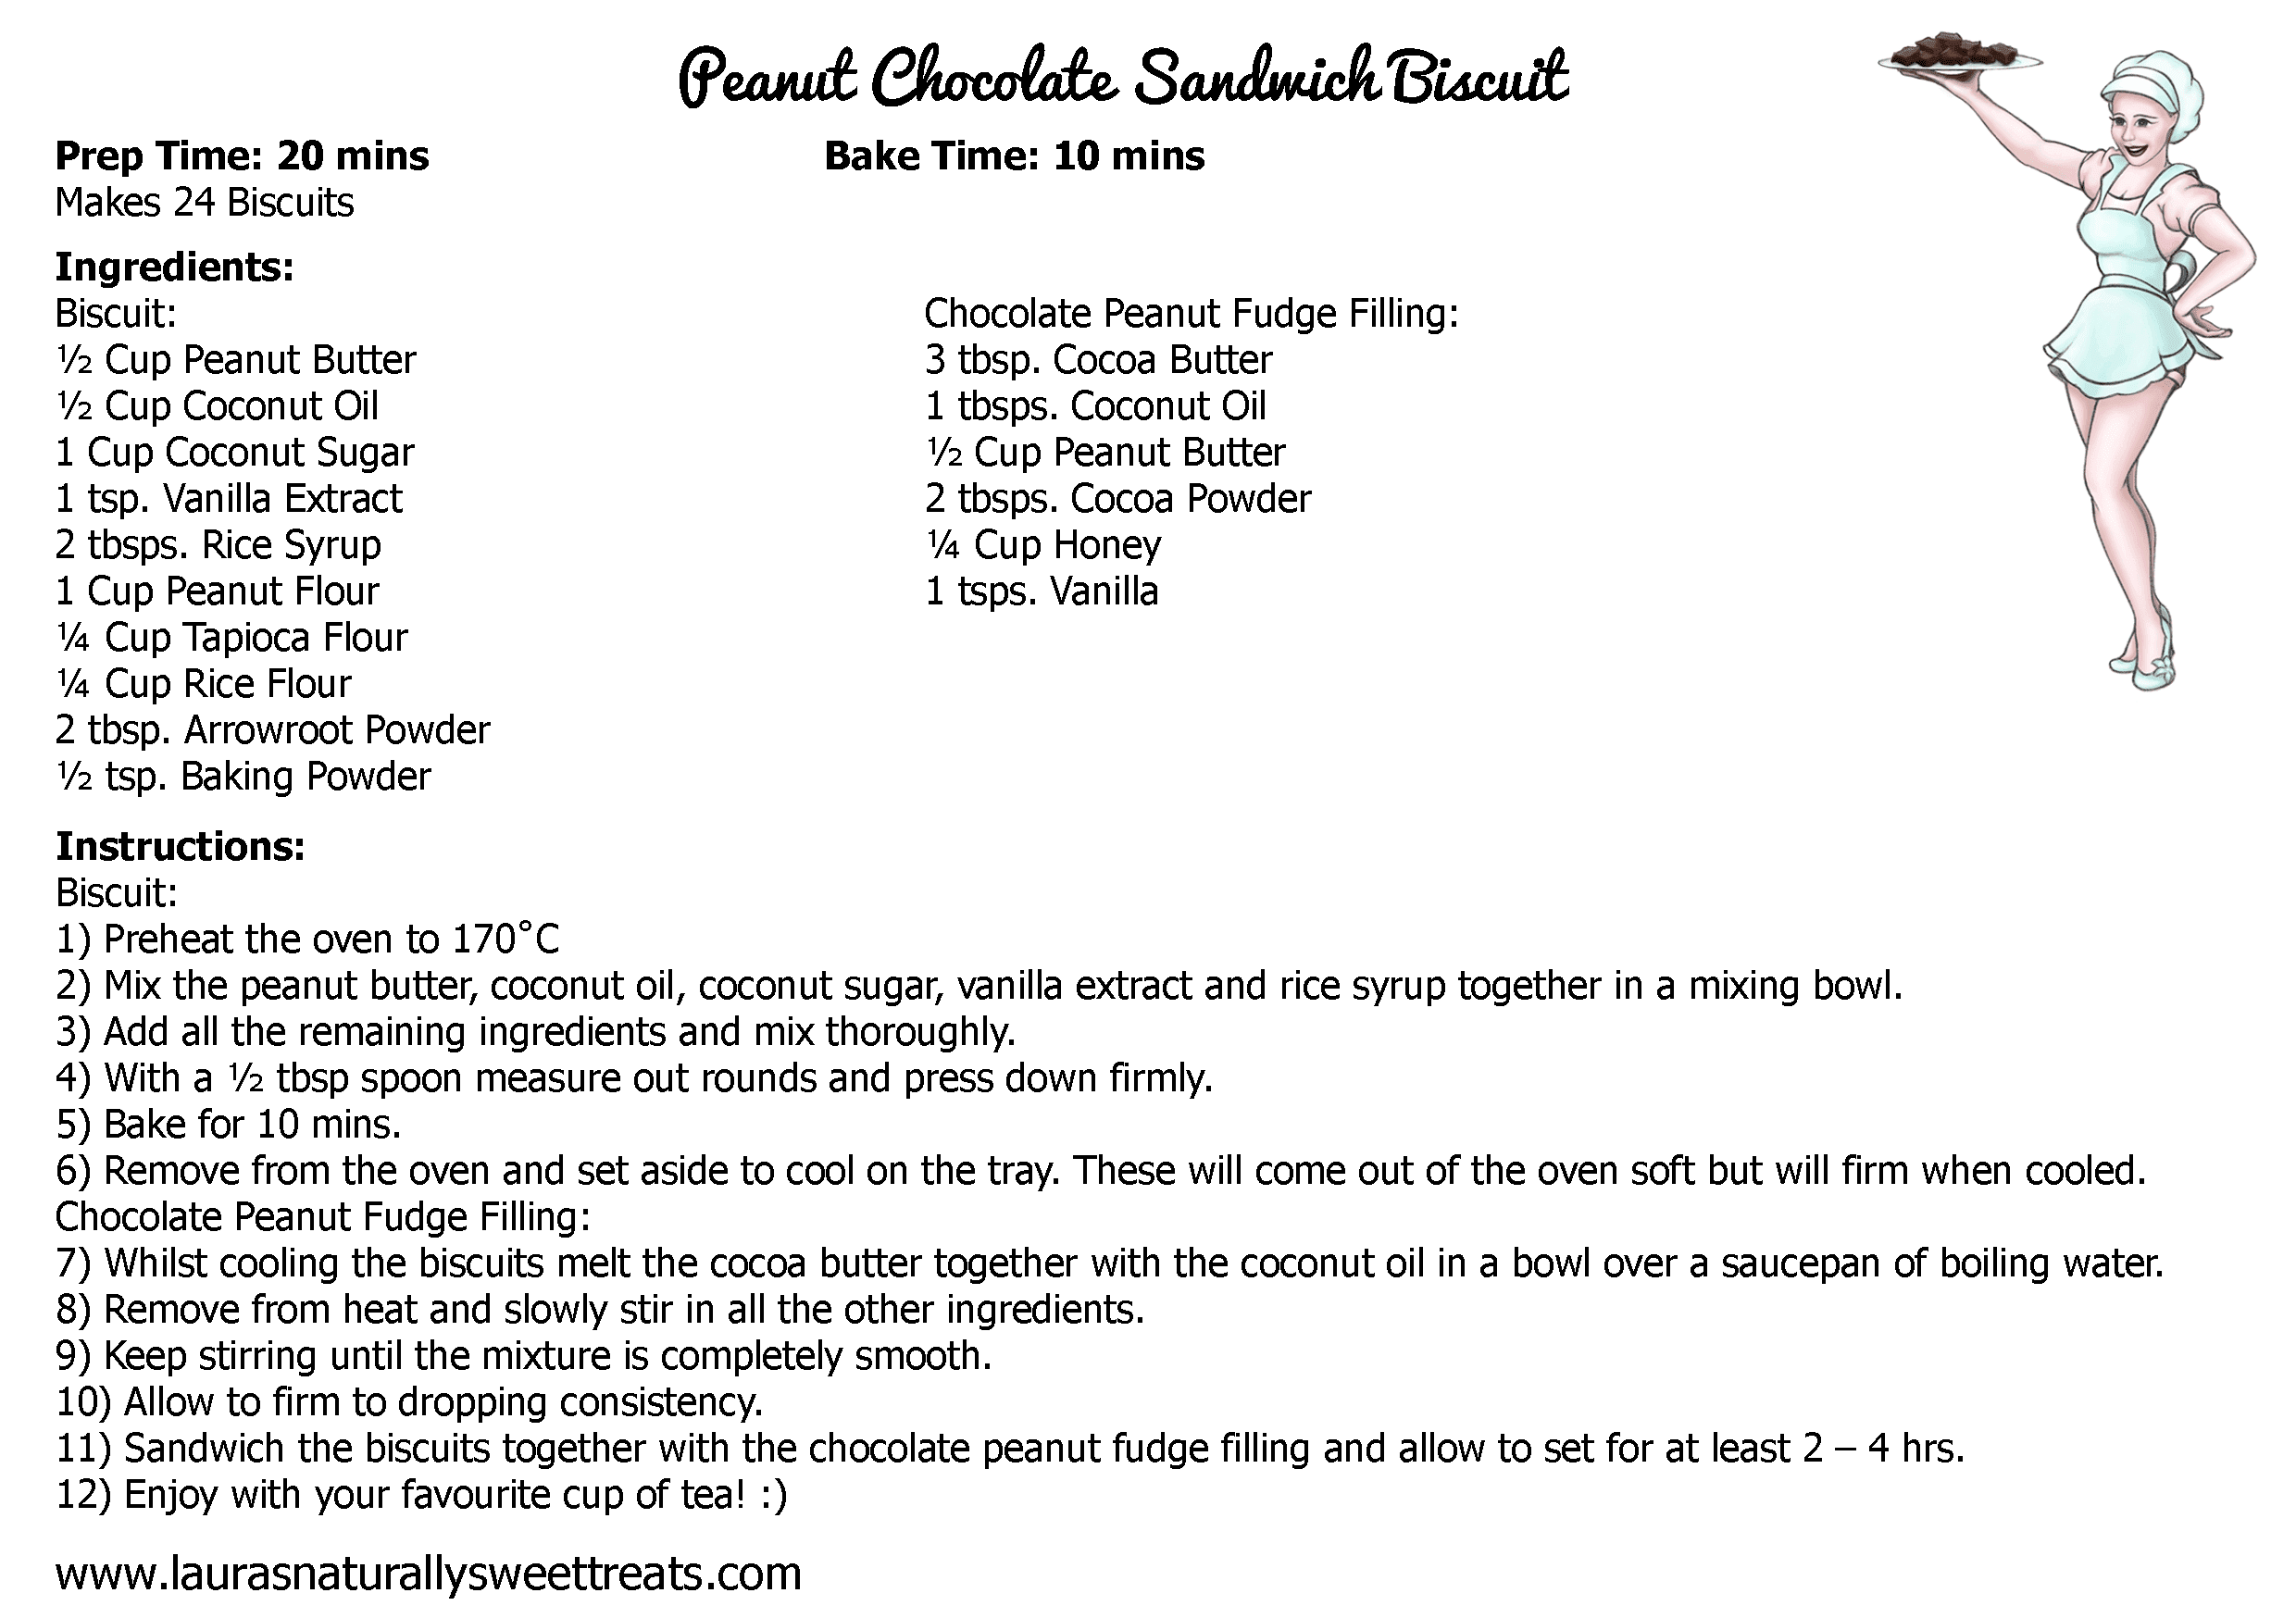 peanut-chocolate-sandwich-biscuit-recipe-card